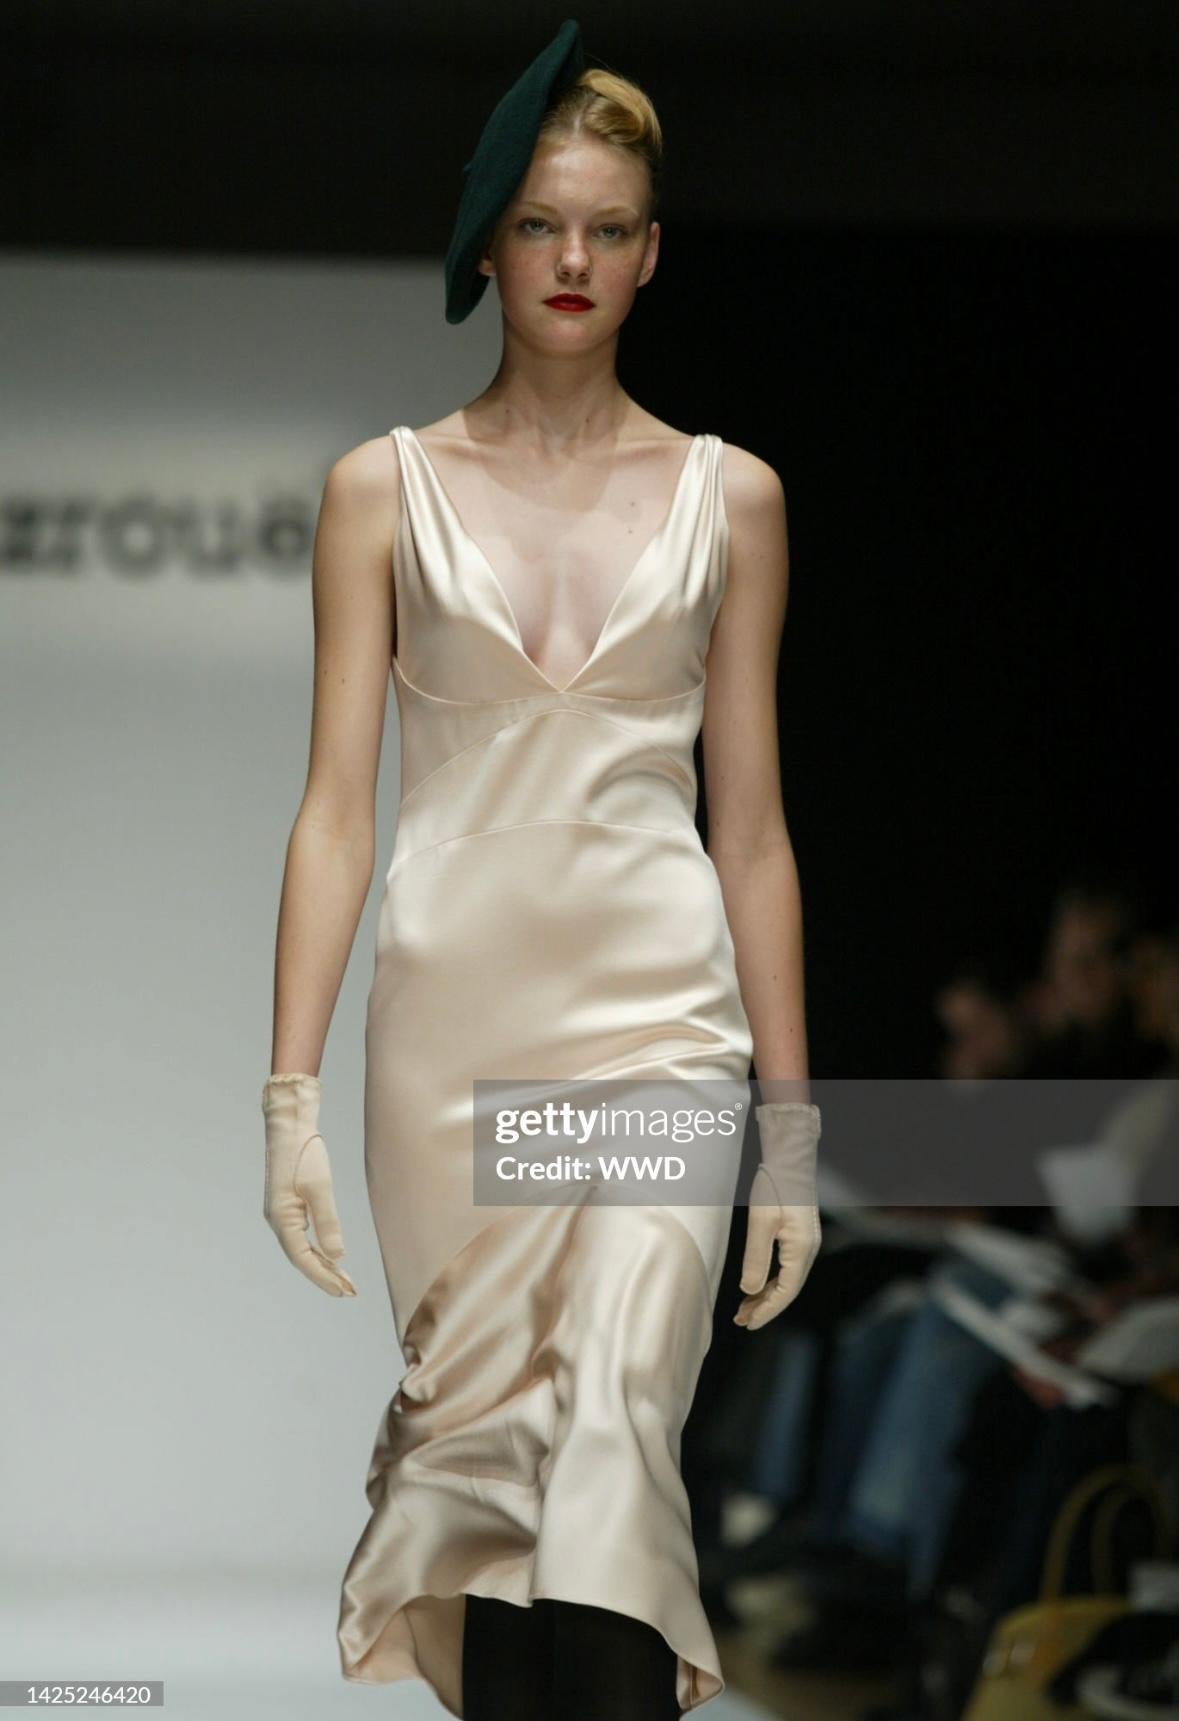 Voici une robe en satin rose pâle, longueur genou, de Yigal Azrouël, de la collection automne/hiver 2004. Cette robe sans manches d'un rose tendre a fait ses débuts sur le podium de Bryant Park lors de la Semaine de la mode de New York. Ce classique